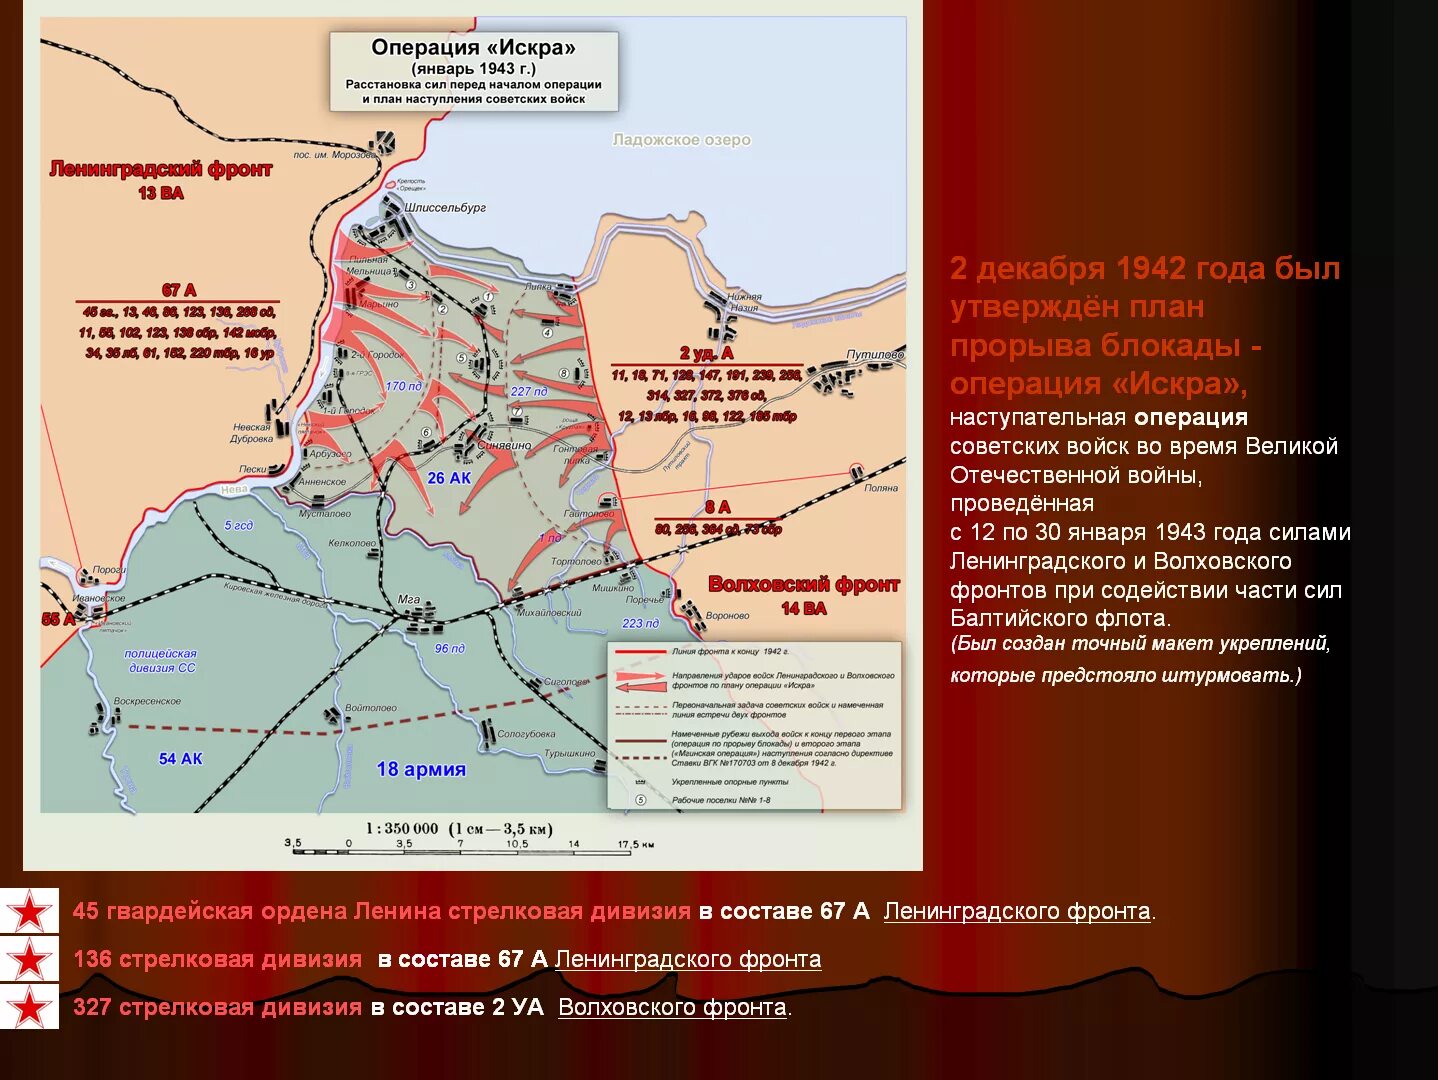 Прорыв блокады Ленинграда (12–30 января 1943). Карта прорыва блокады Ленинграда в 1943 году. Кодовое название операции 1944